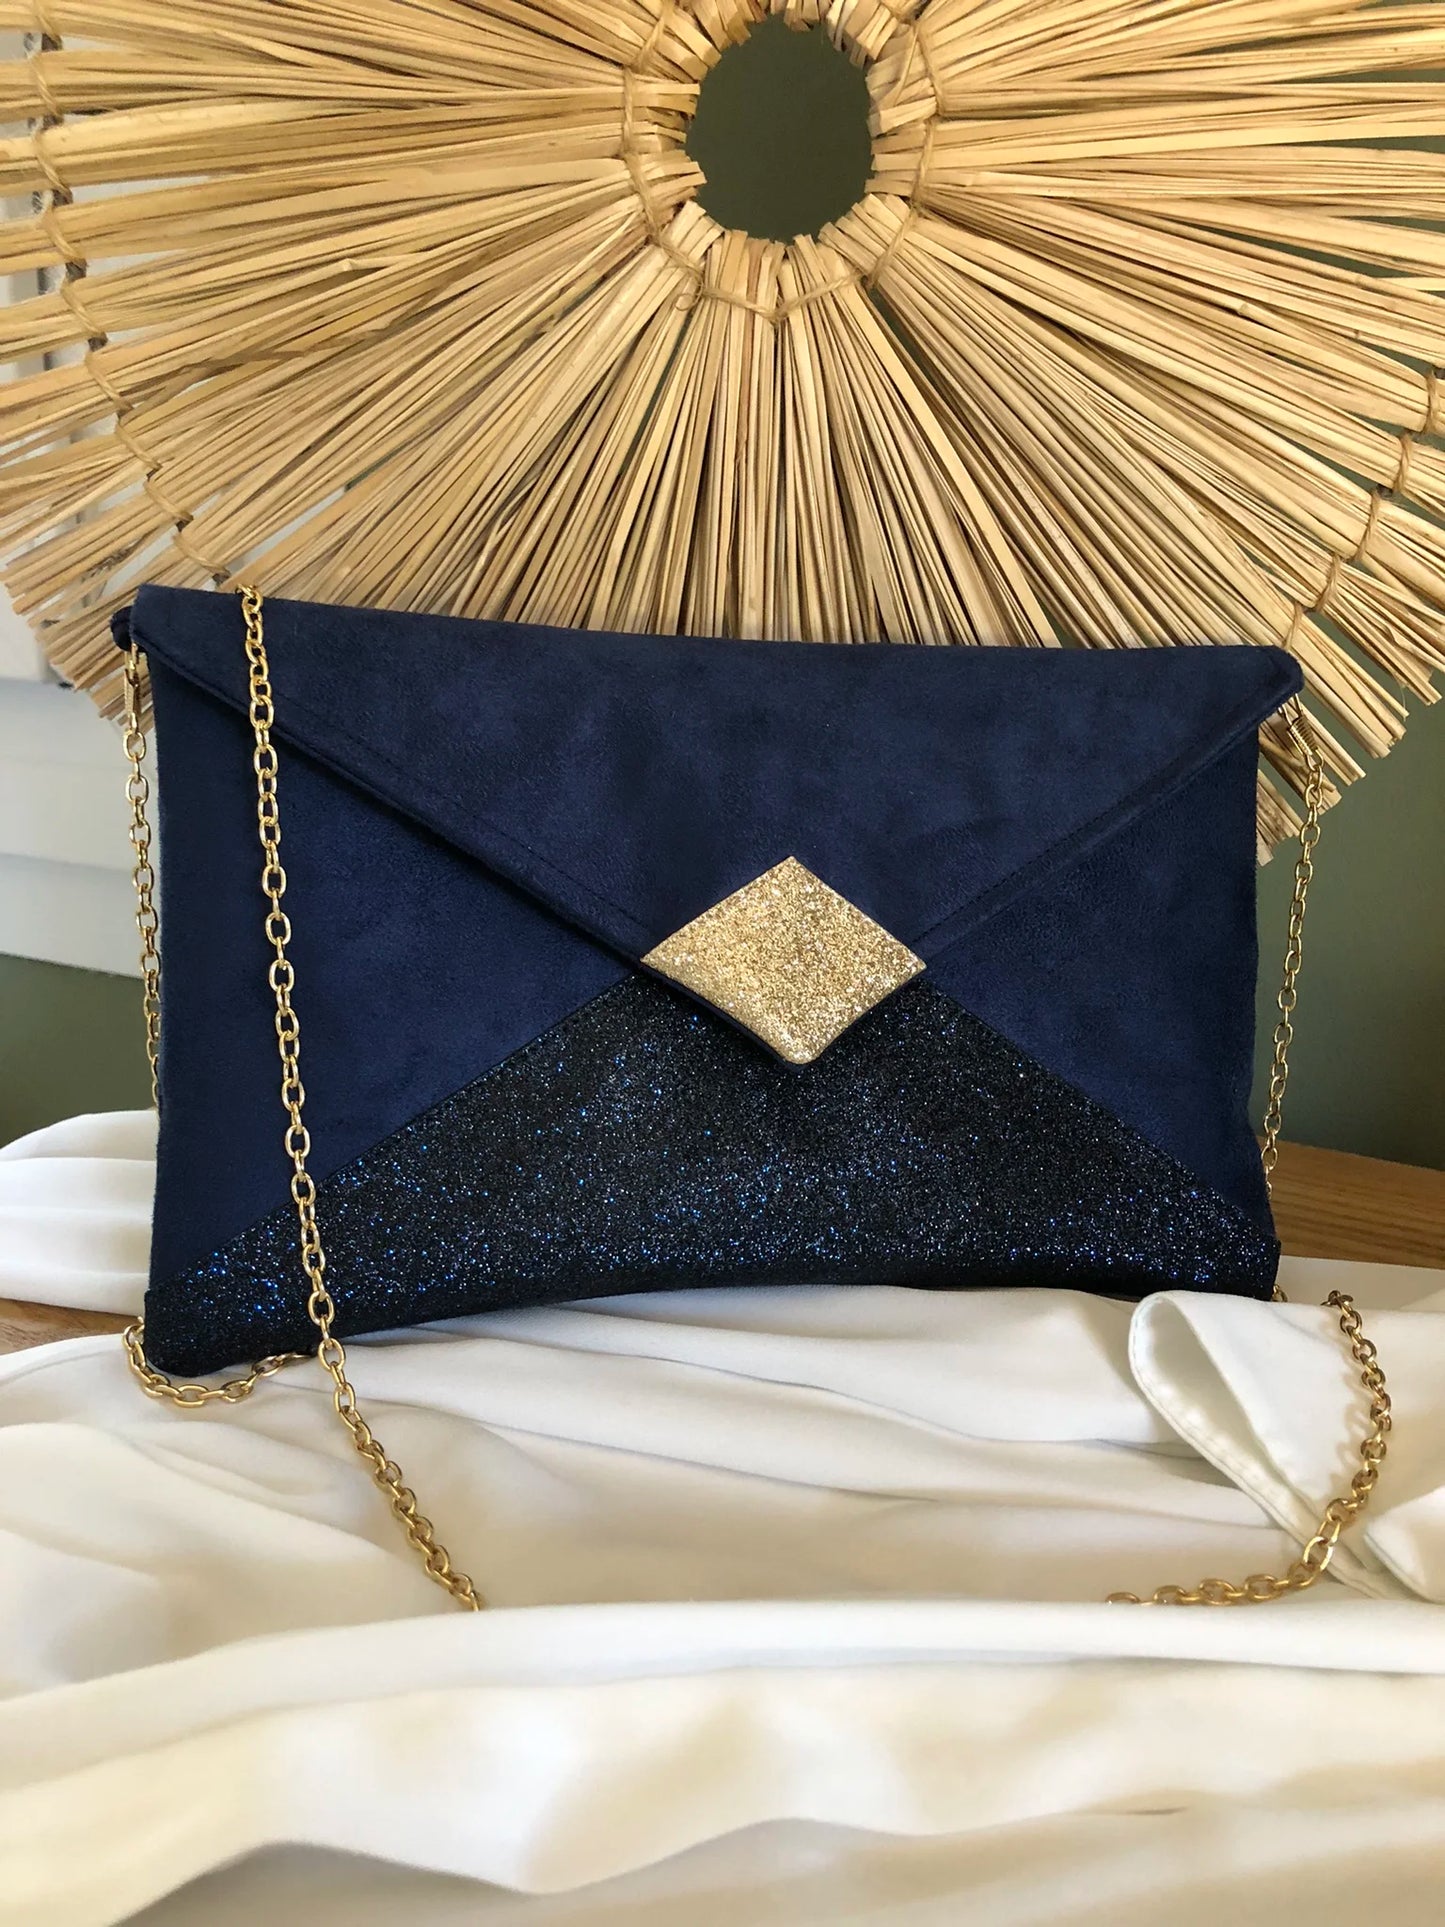 Le sac pochette Isa bleu marine et doré à paillettes, avec chainette amovible, posé sur chemisier.